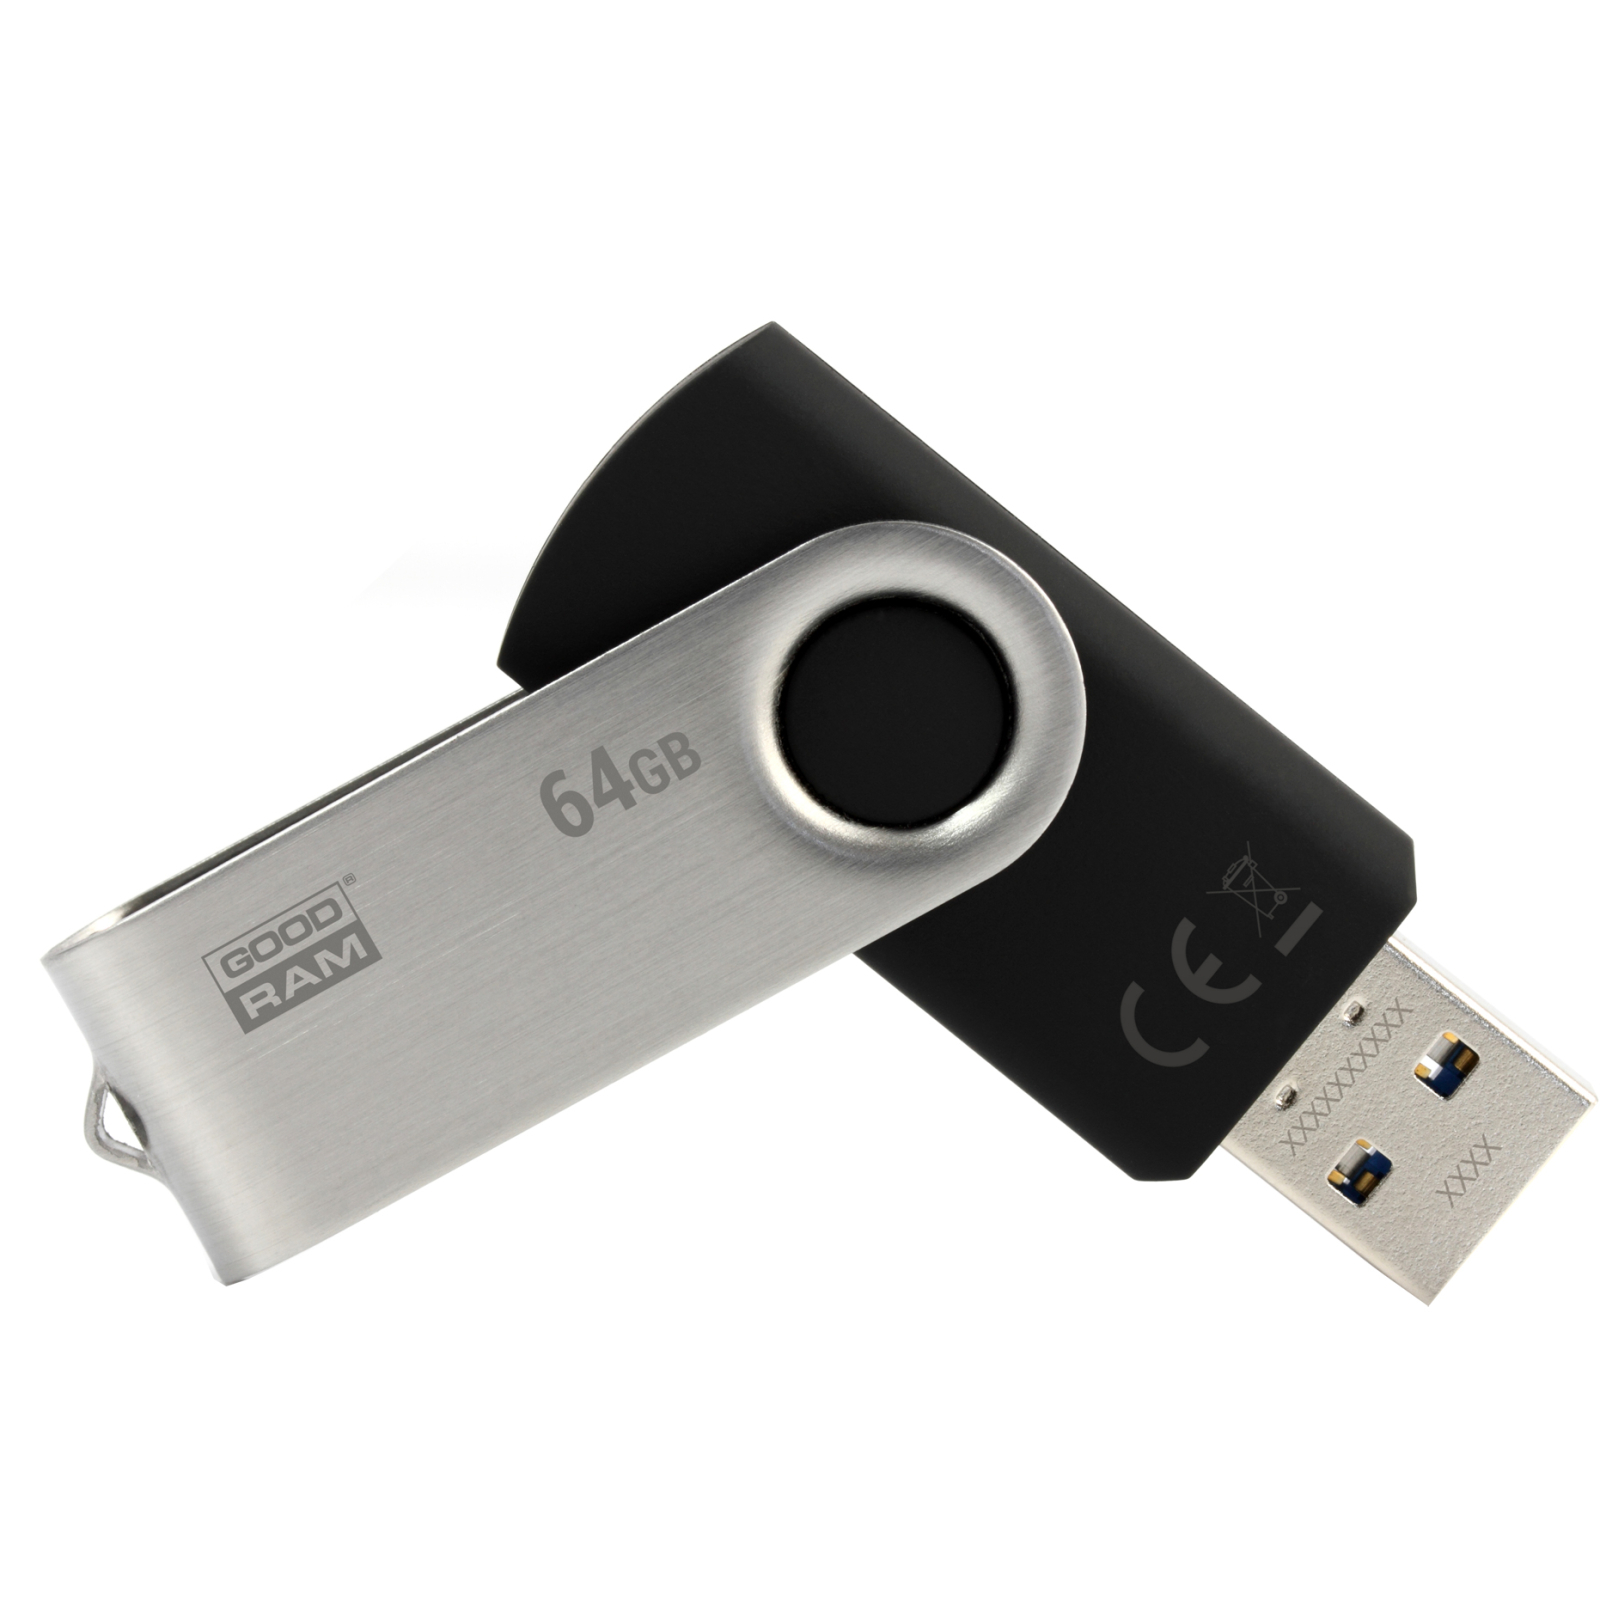 USB флеш накопичувач Goodram 128GB UTS2 Twister Black USB 2.0 (UTS2-1280K0R11)